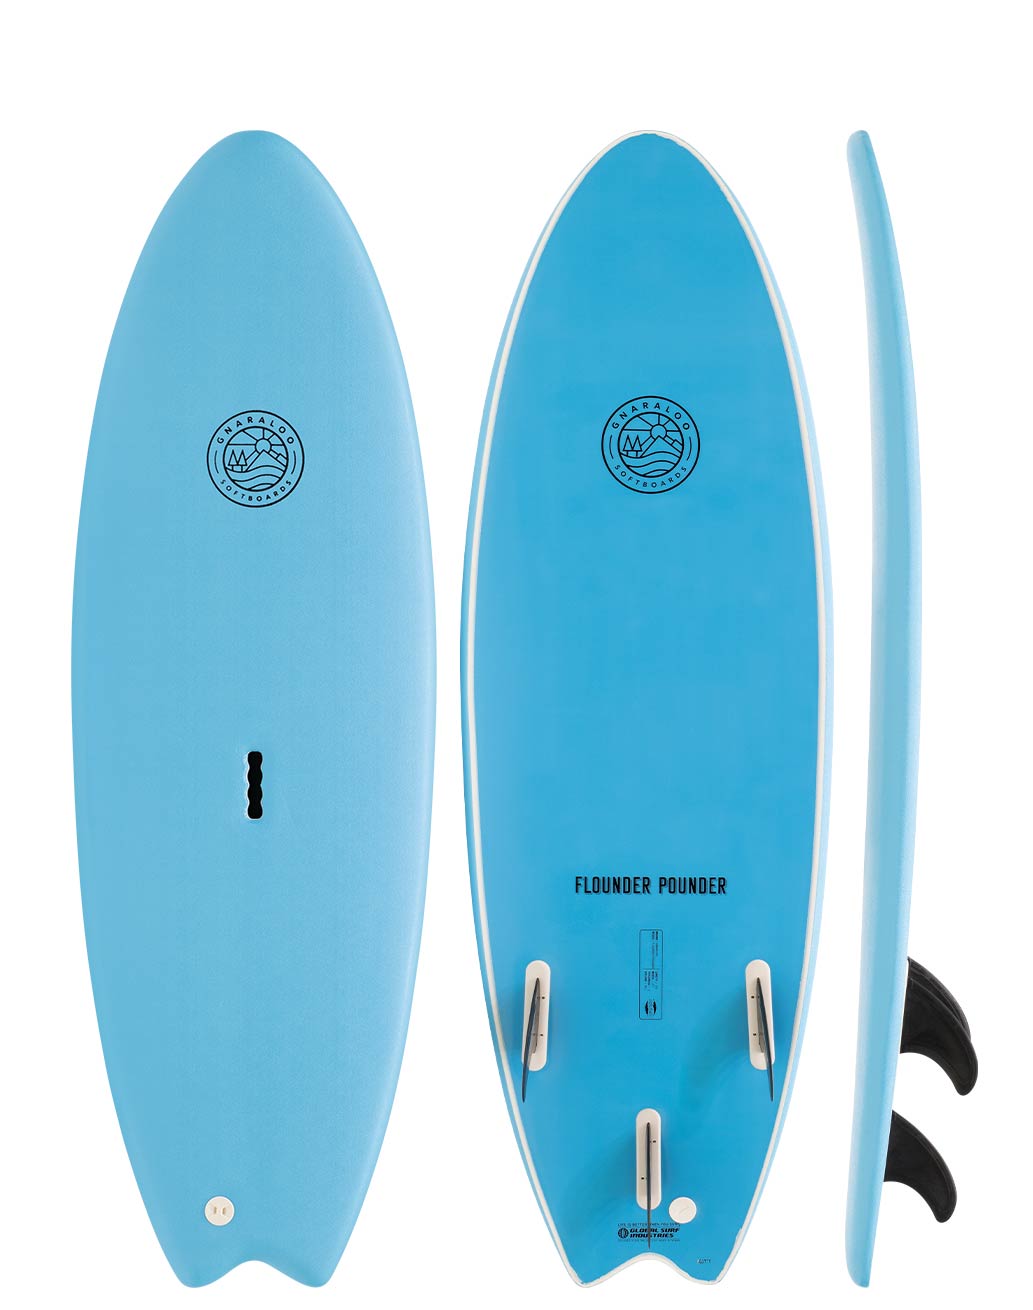 Gnaraloo soft surfboards - Flounder Pounder blue surfboard